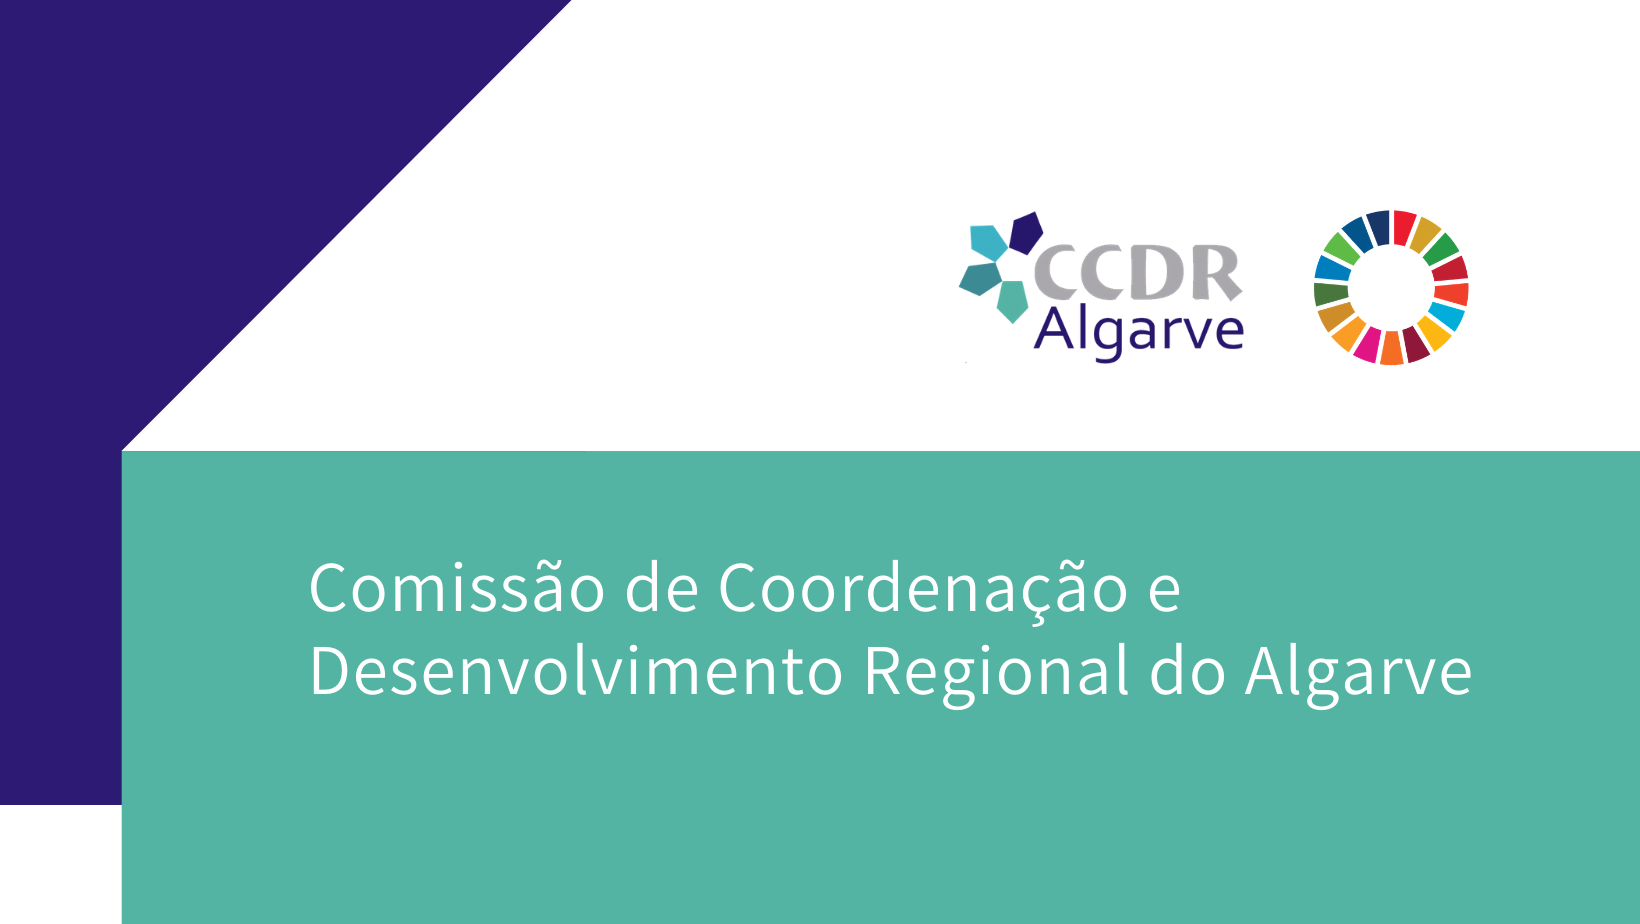 2019: Algarve reforçou contributo para PIB nacional